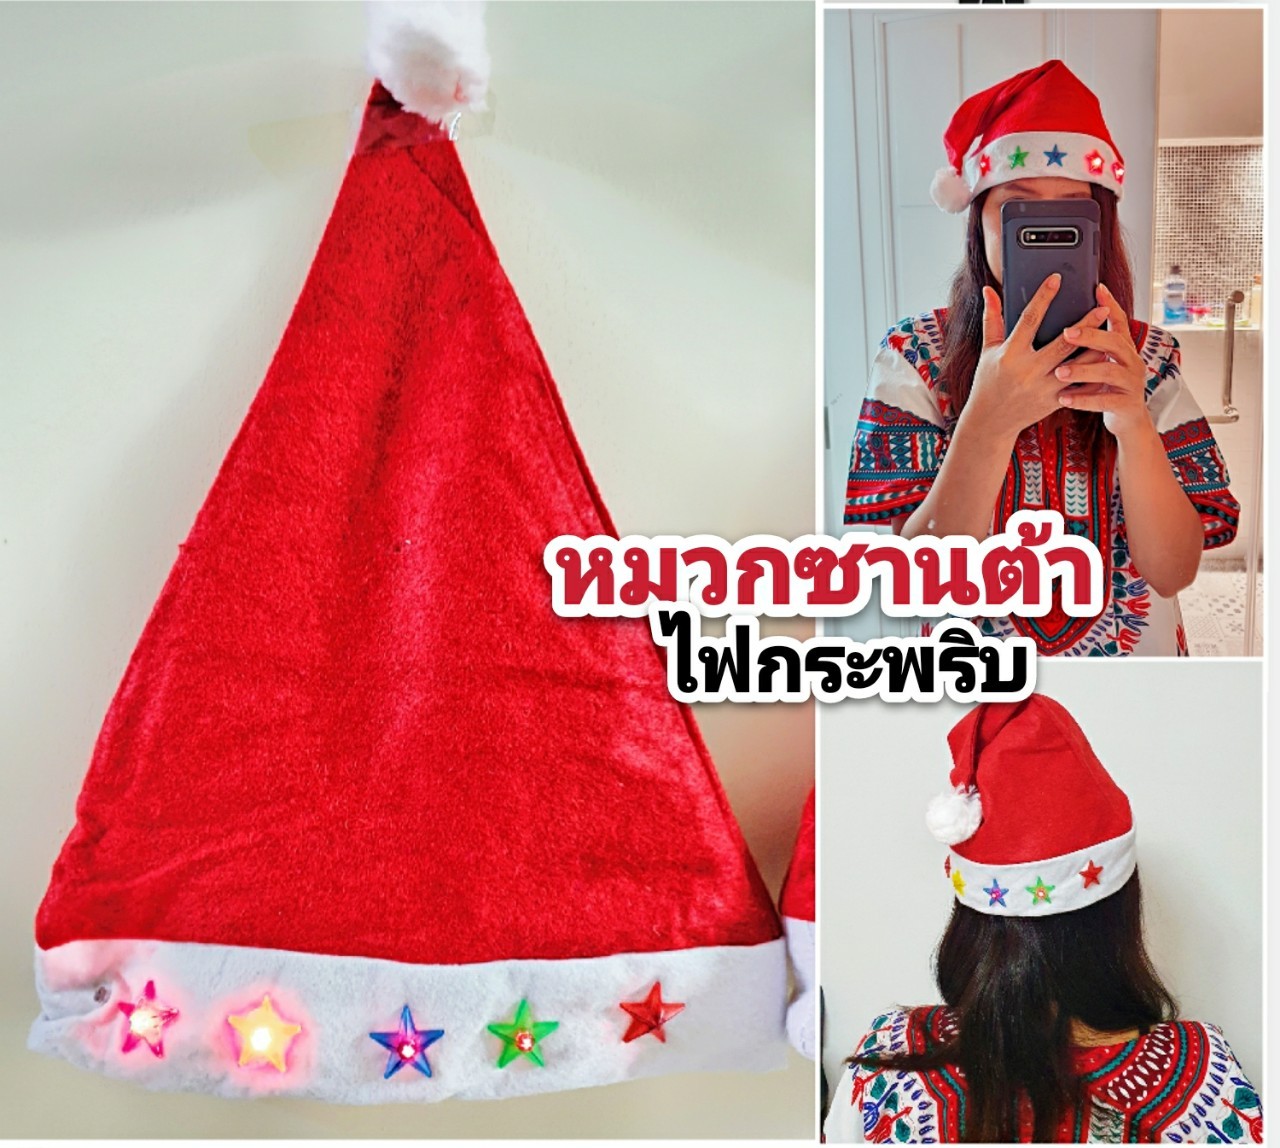 หมวกซานต้า ไฟกระพริบ หมวกแฟนซีสีแดงสดใส เด็กและผู้ใหญ่ใส่ได้ (ปุ่มไฟเปิด-ปิดได้)